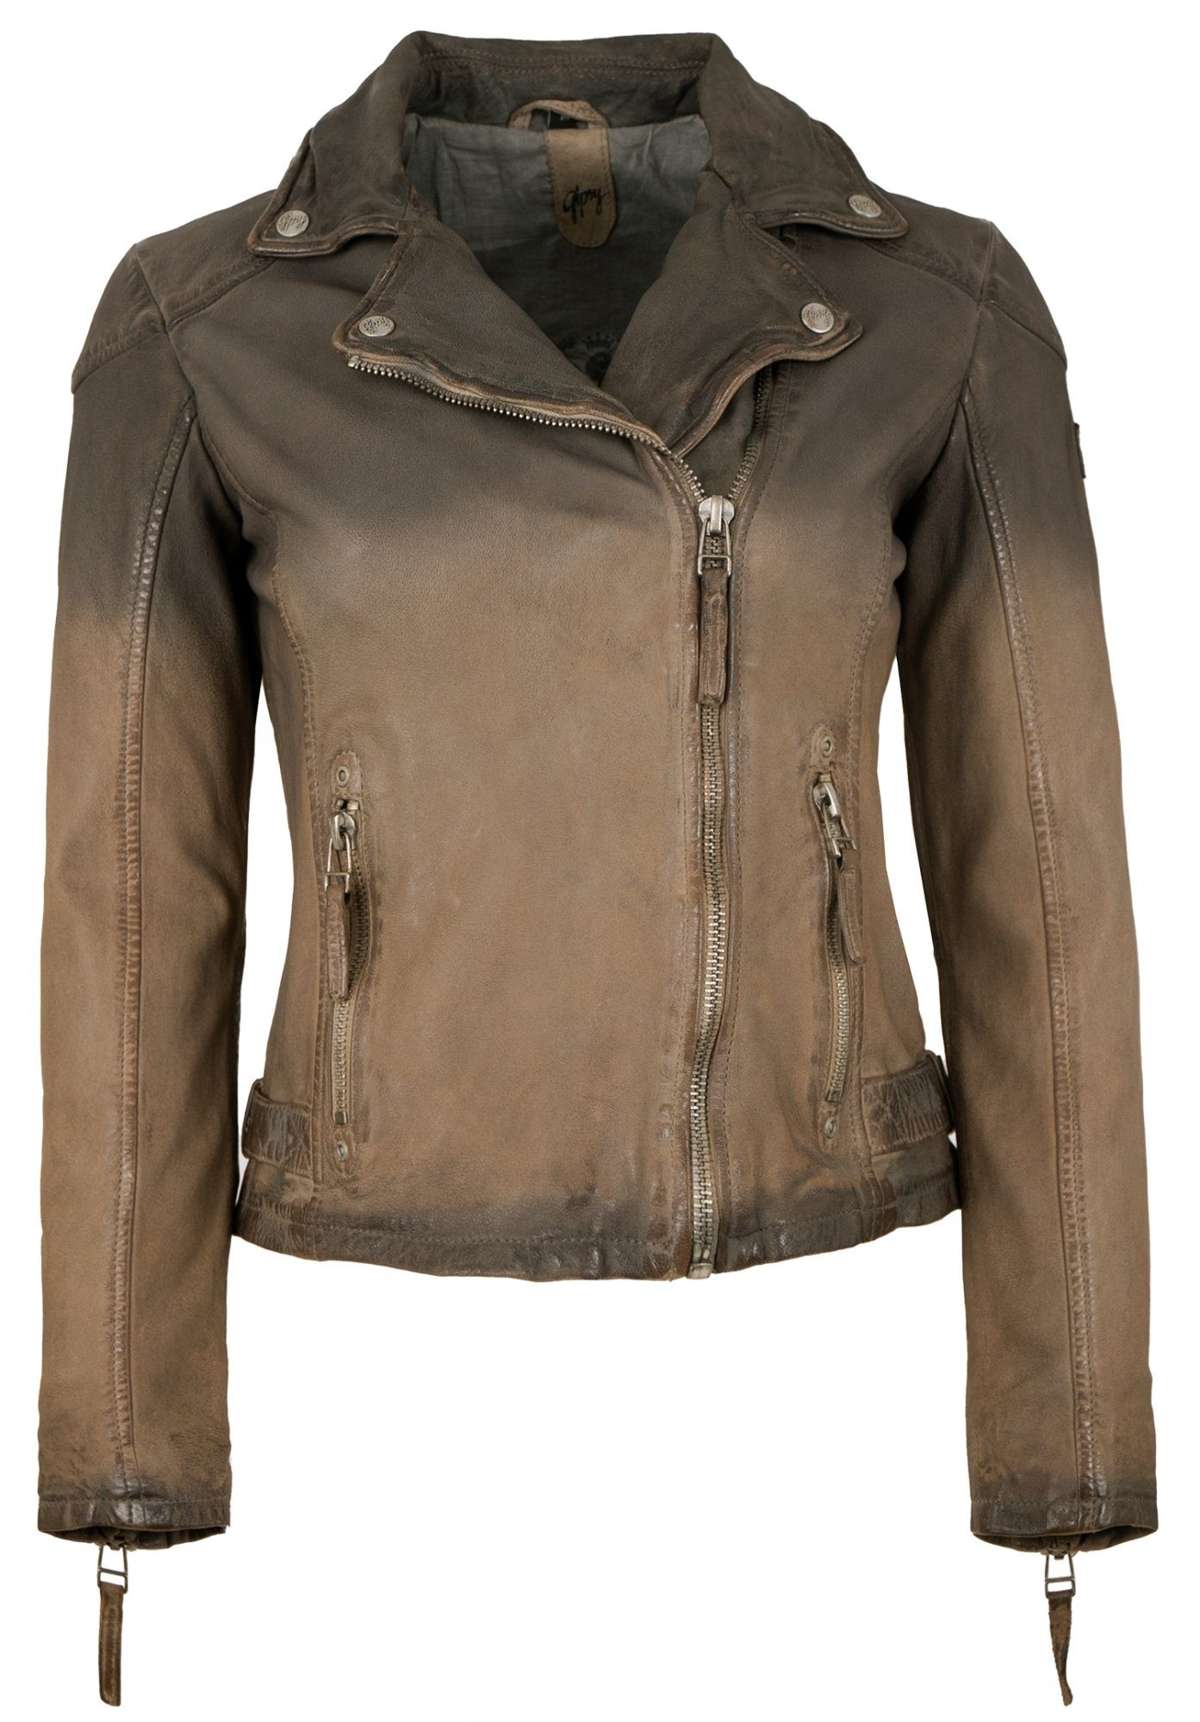 Кожаная куртка GWKandy из натуральной кожи женская кожаная куртка байкерская куртка из кожи ягненка серо-коричневый антик